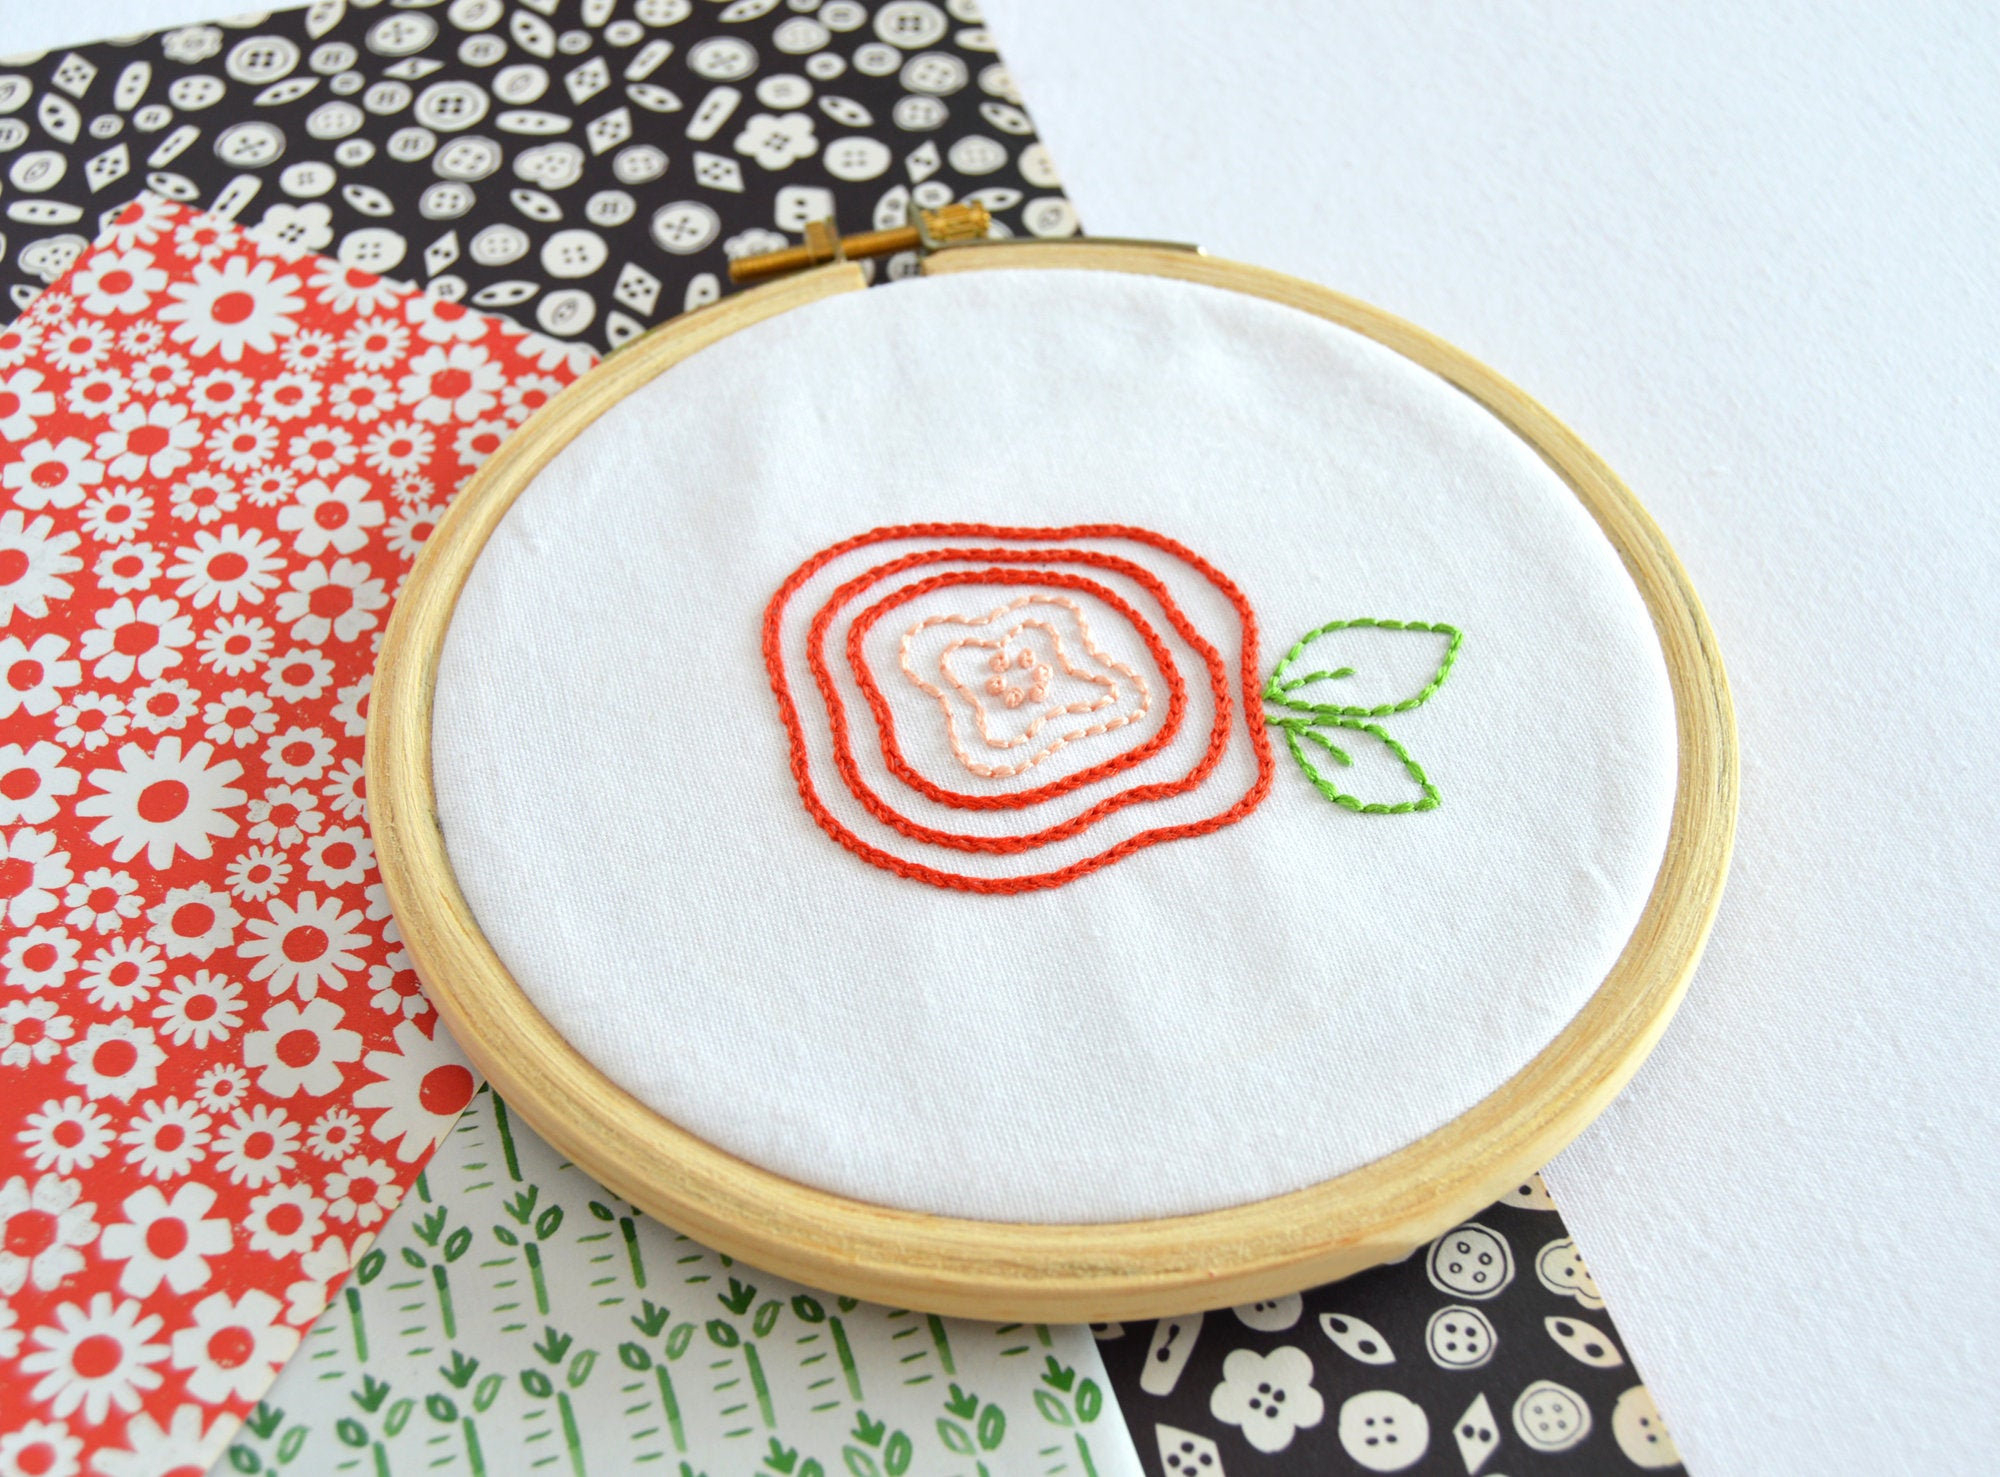 Hand Embroidery Sampler Patterns Bloom Sampler Hand Embroidery Pattern An Embroidery Sampler Pdf Pattern